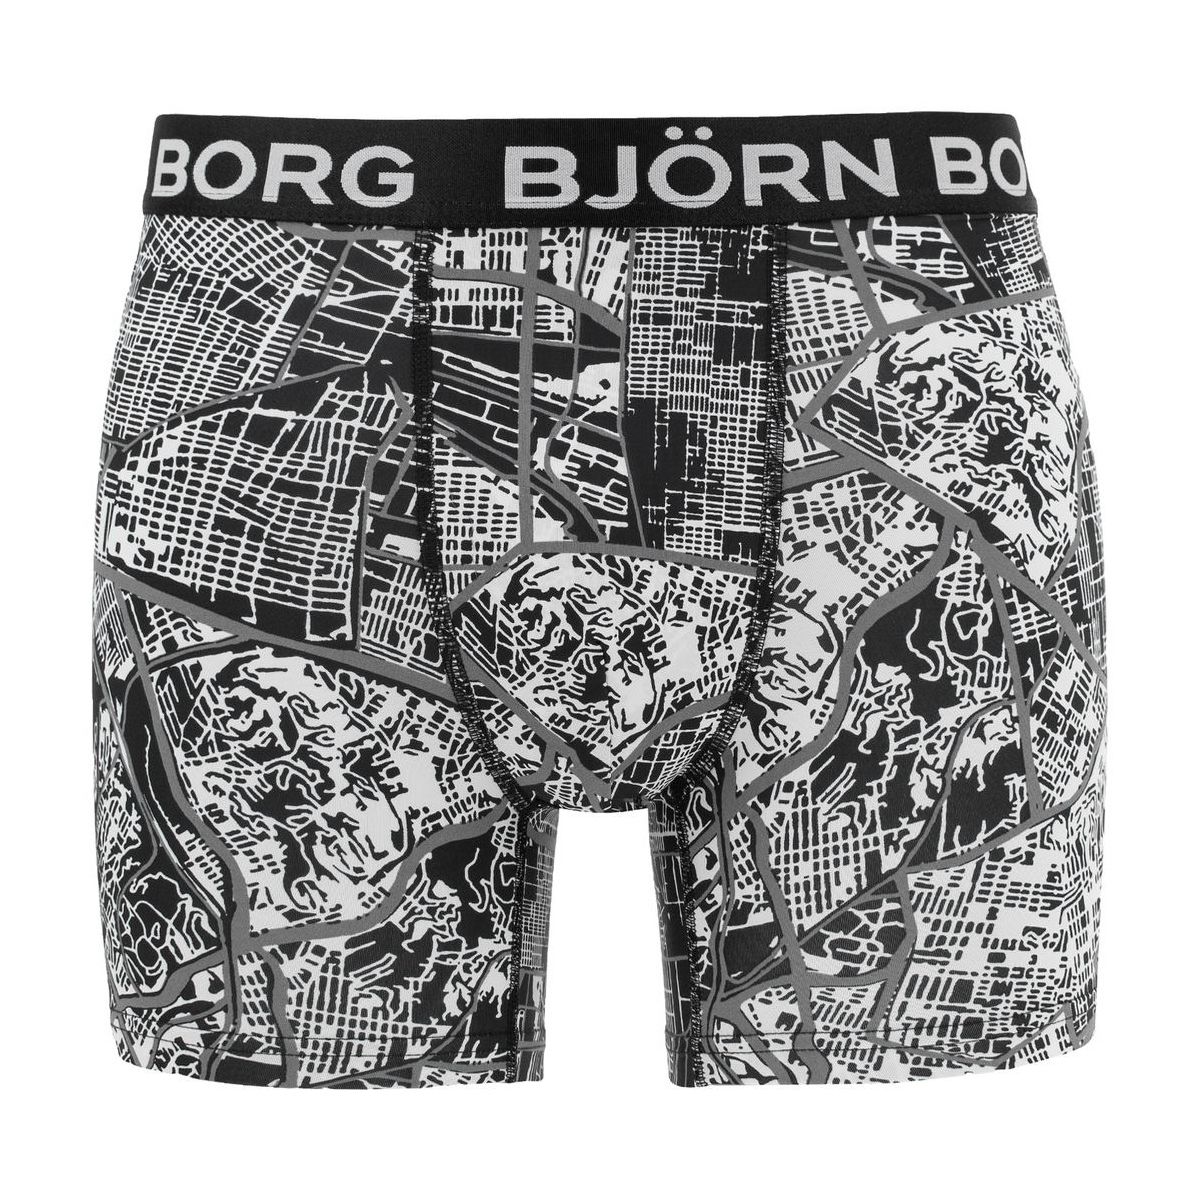 Bjorn Borg LA Map Performance Boxer Shorts 1911-1442-90651